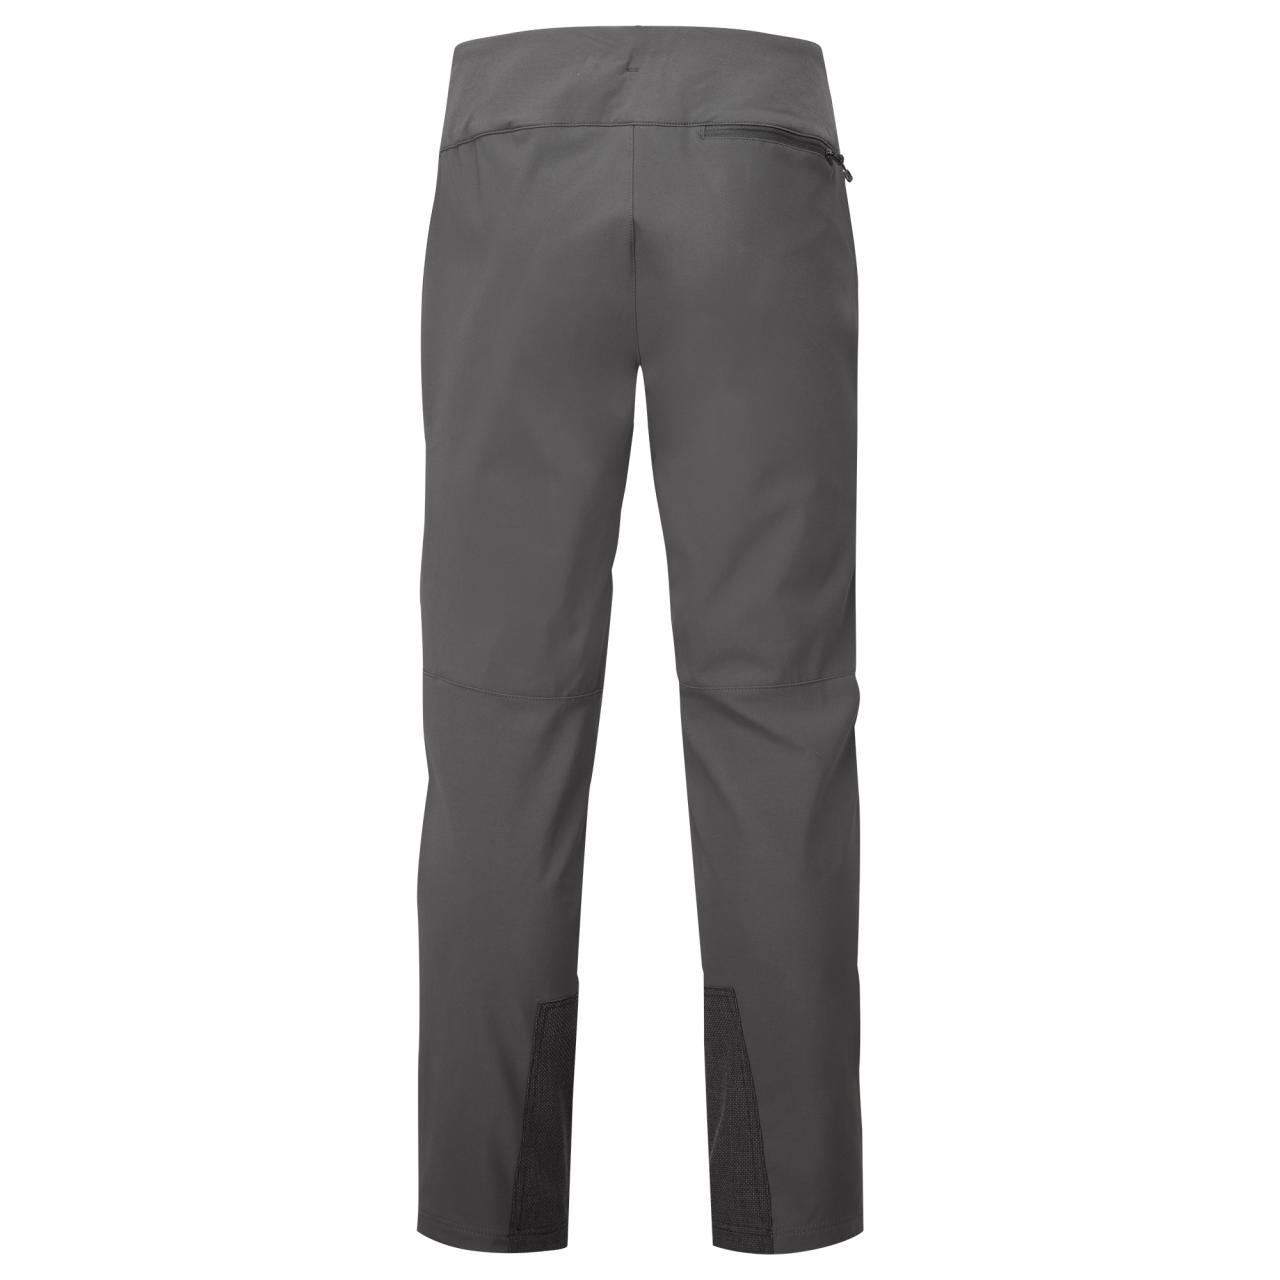 TENACITY XT PANTS SHORT LEG-MIDNIGHT GREY-32/M pánské kalhoty tmavě šedé